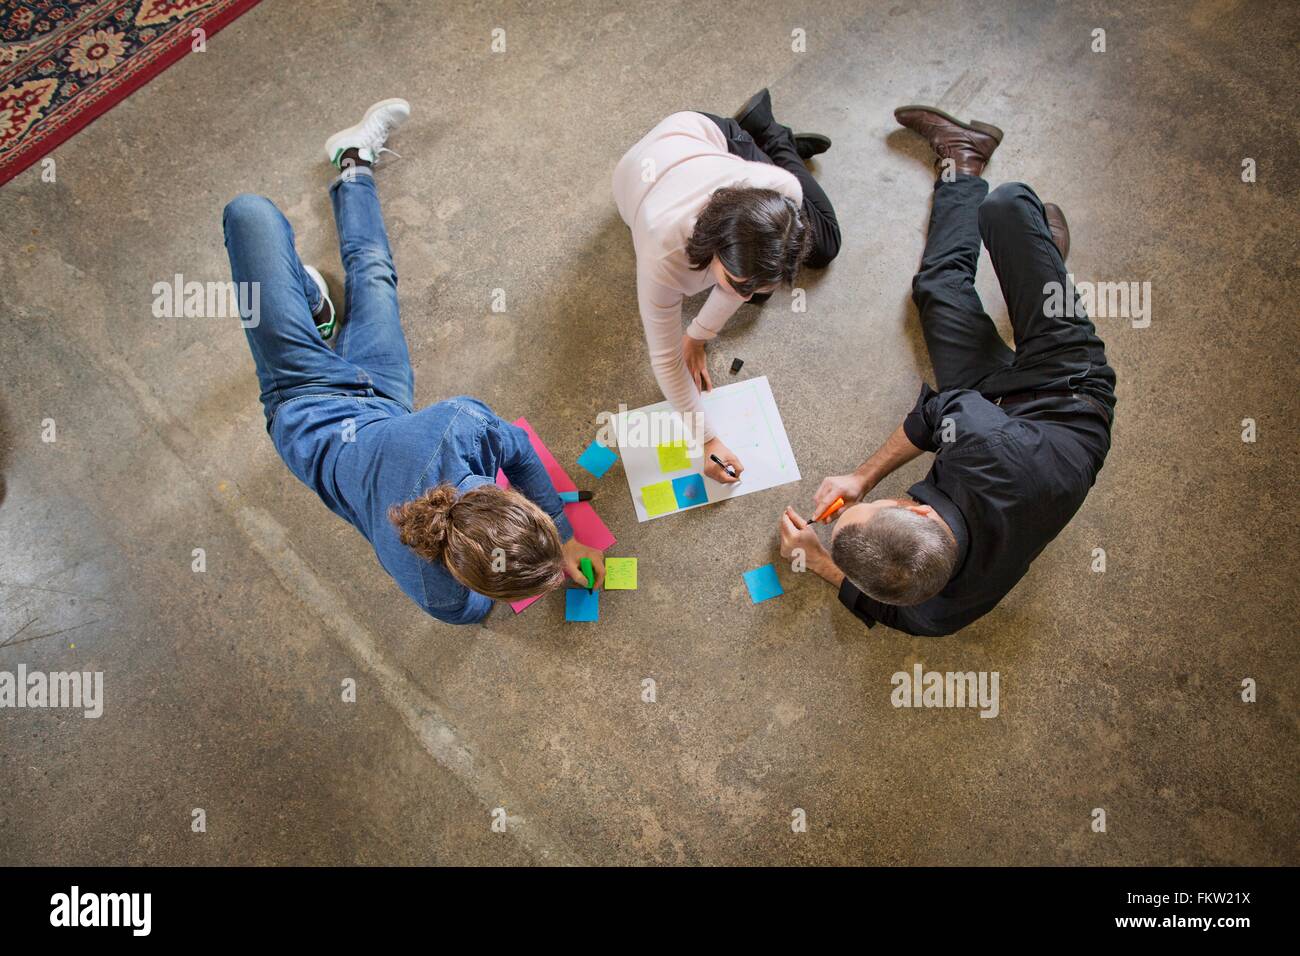 People brainstorming in meeting Stock Photo